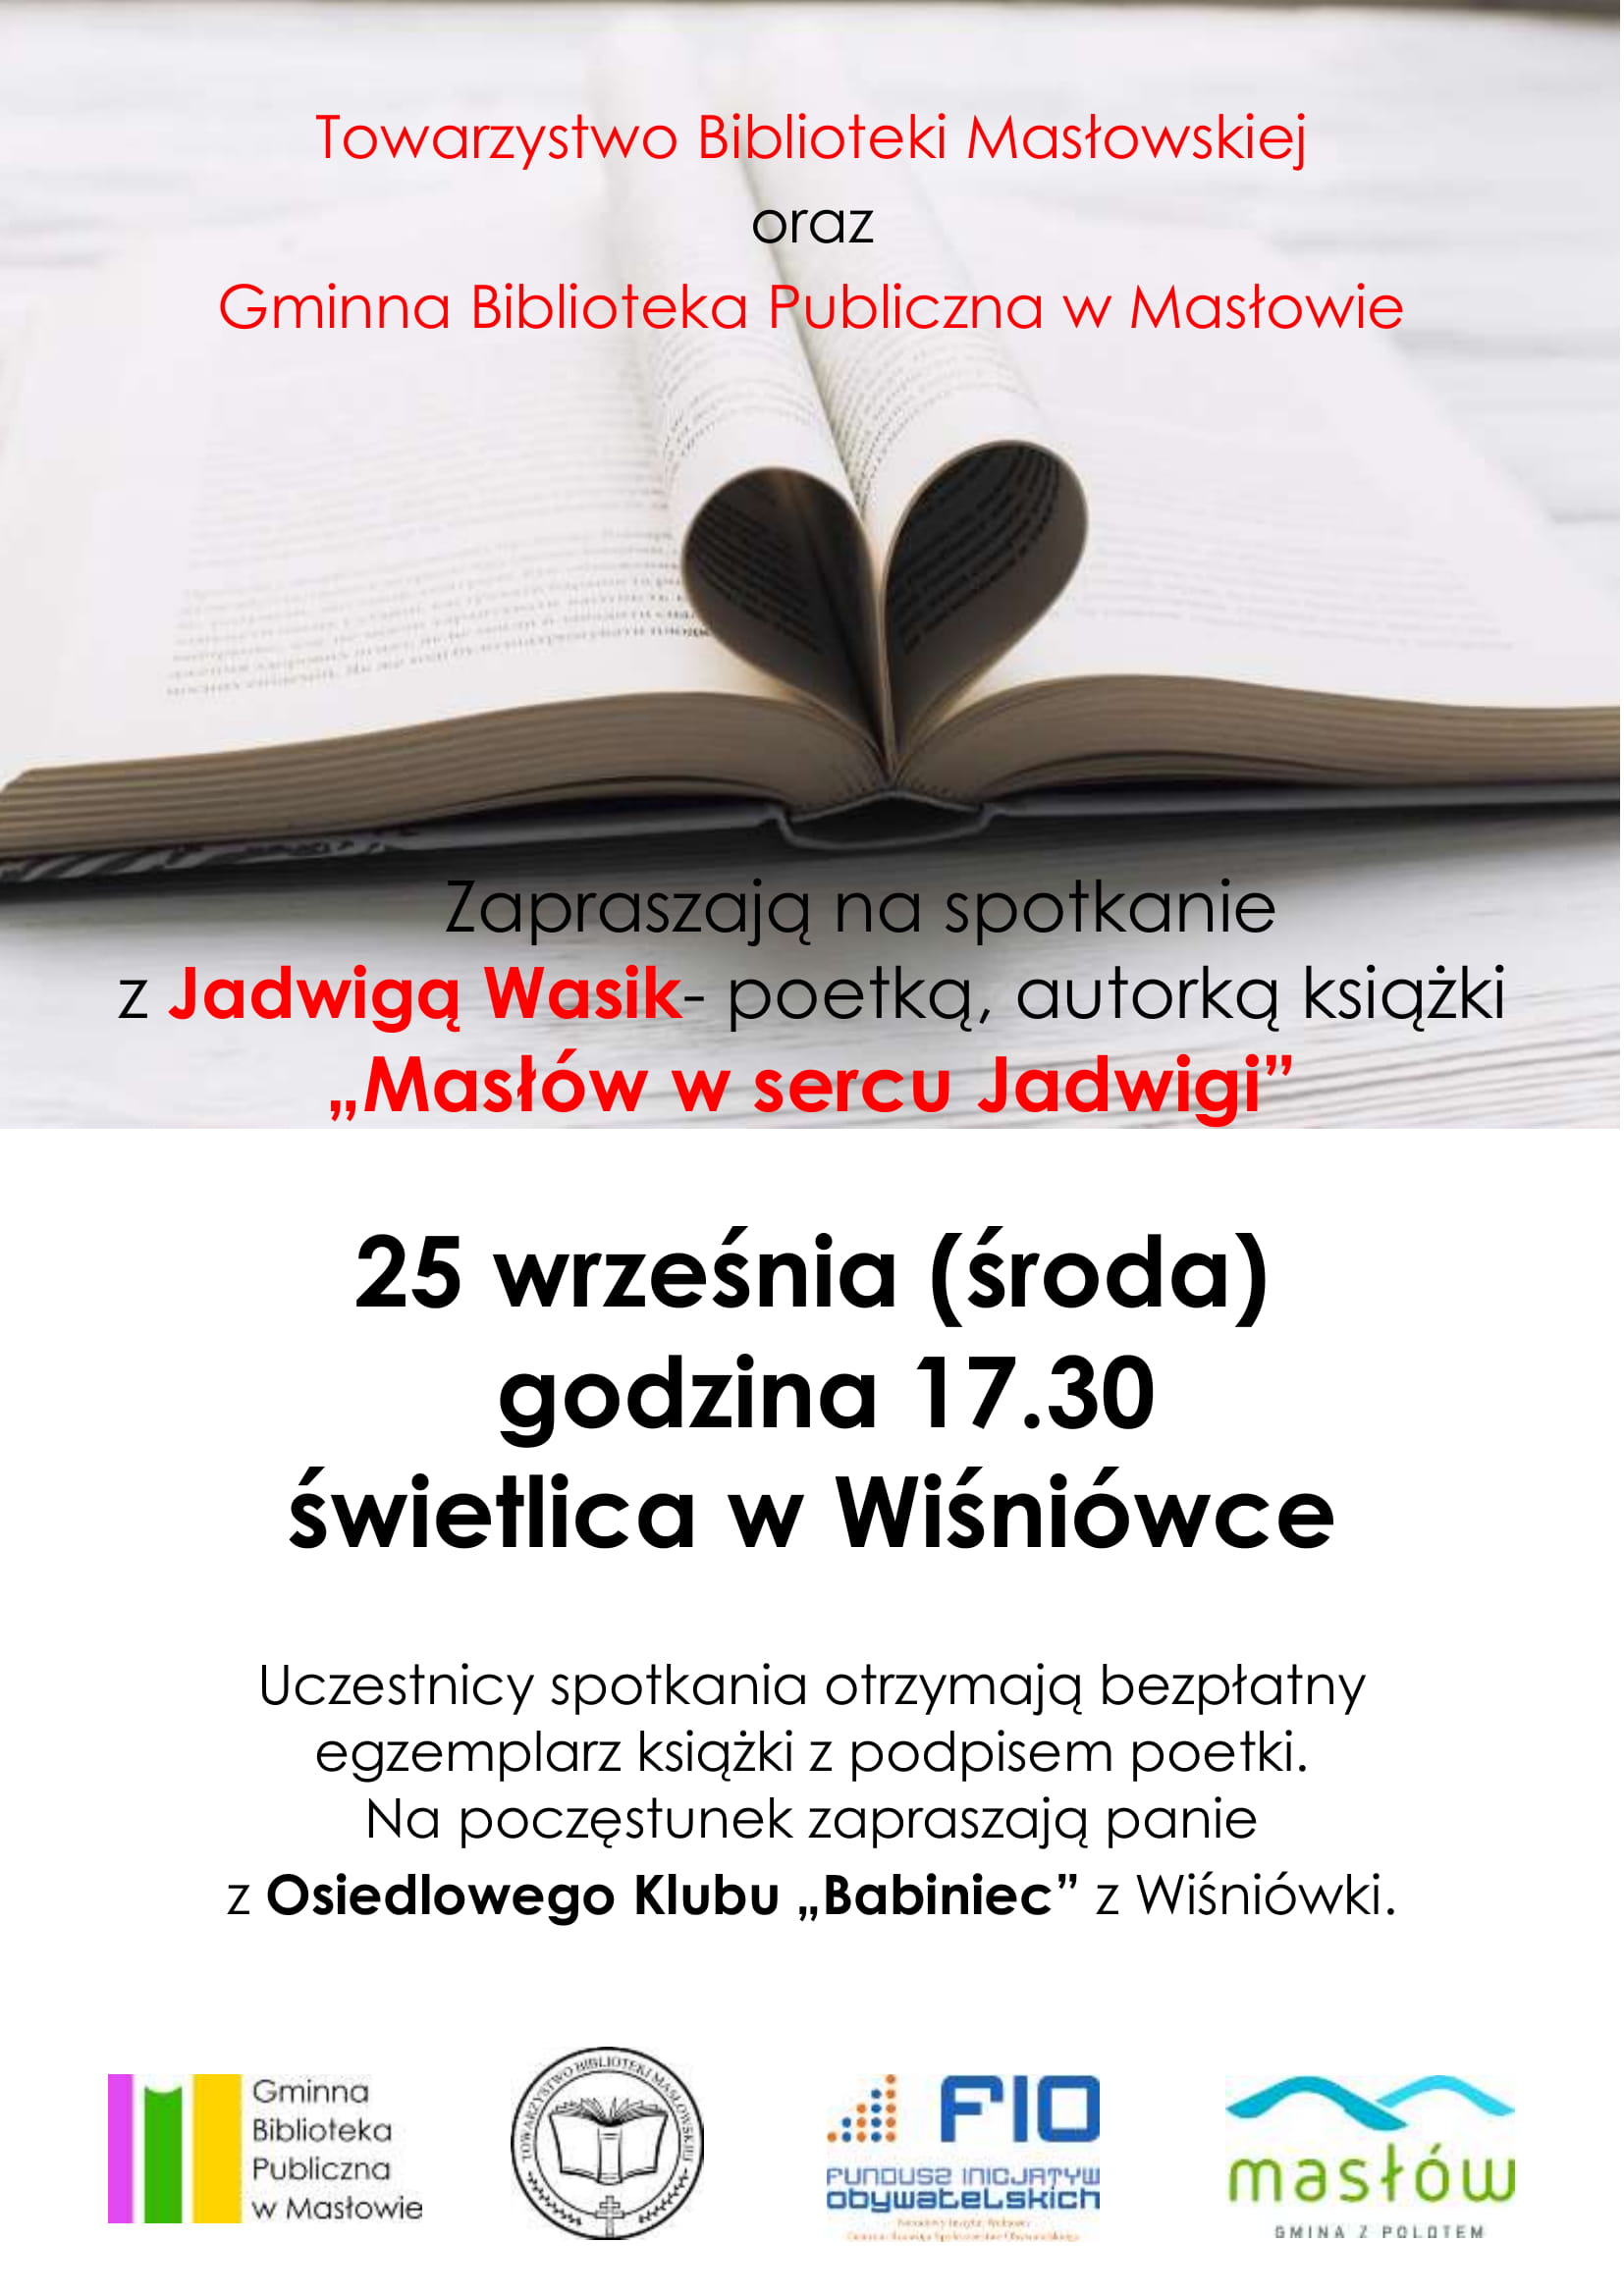 - maslow_w_sercu_jadwigi_zaproszenie-1.jpg